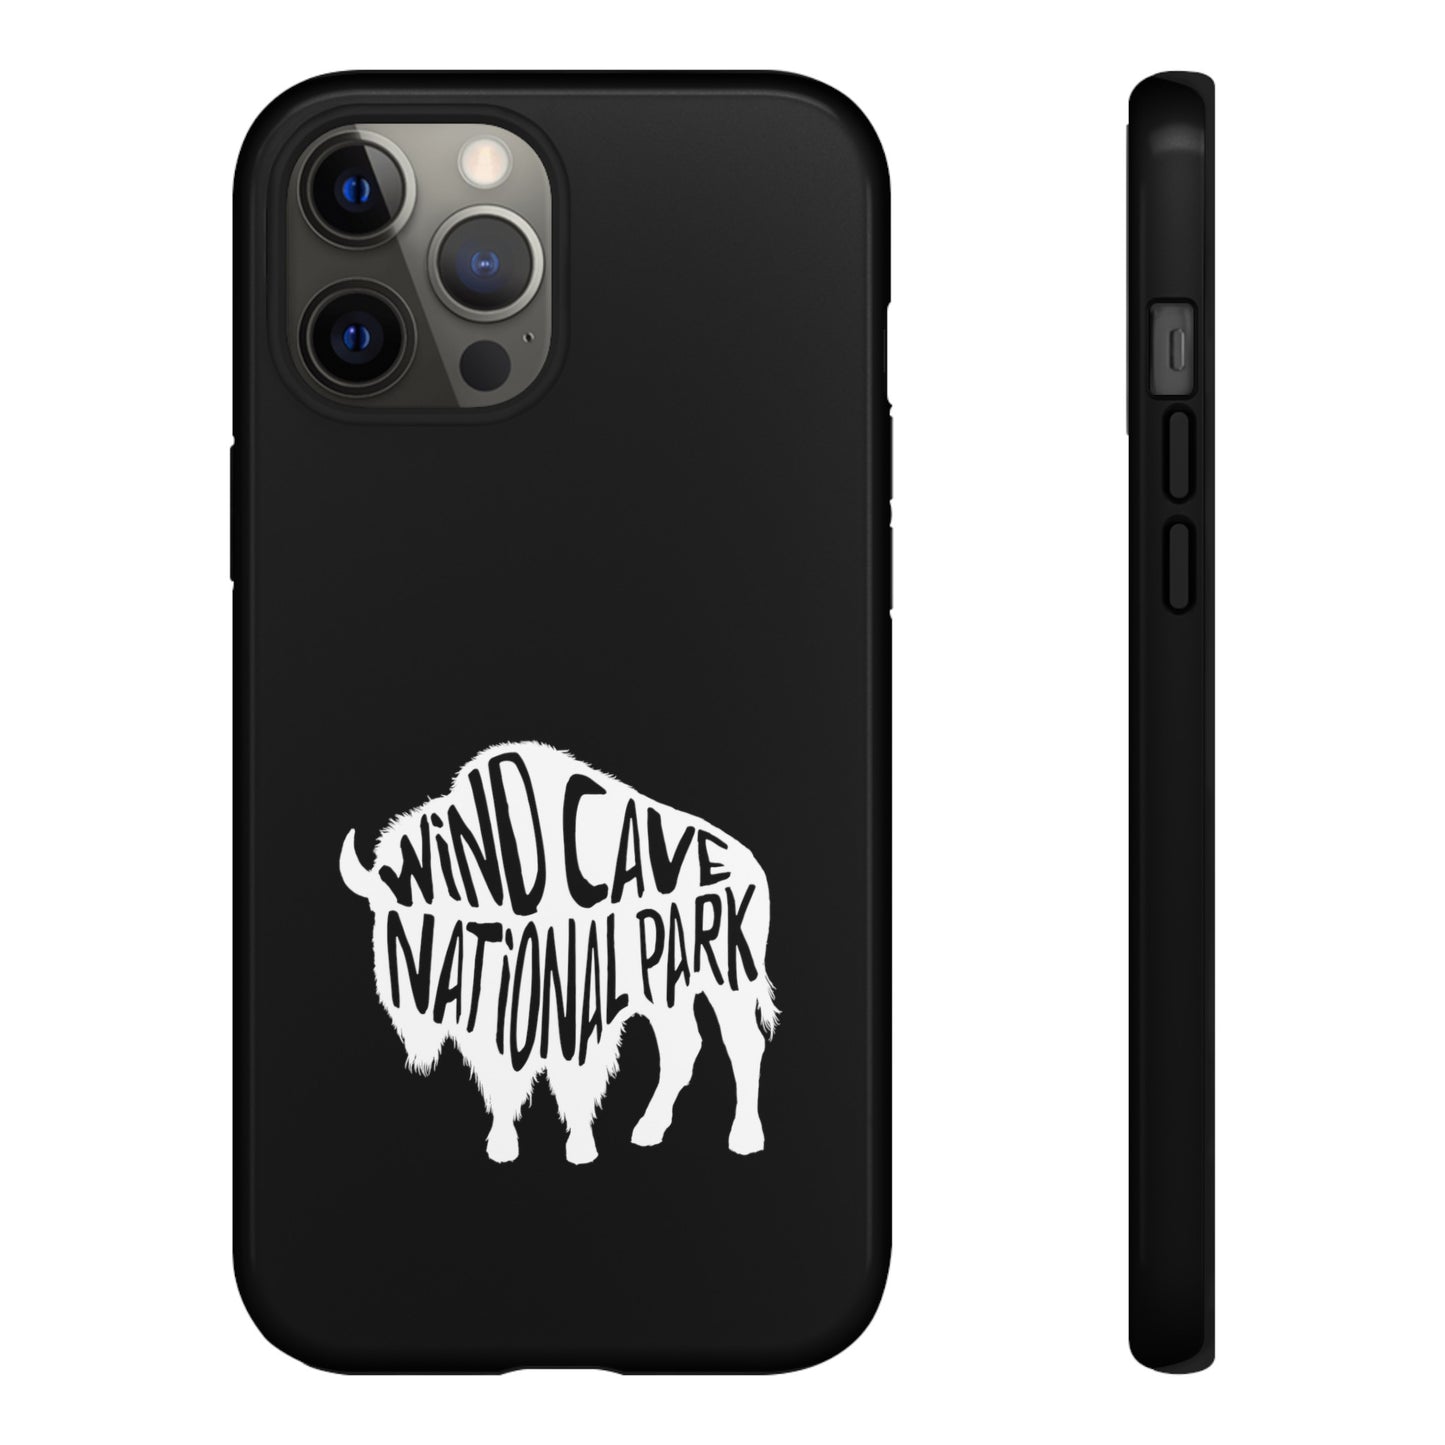 Wind Cave National Park Phone Case - Bison Design